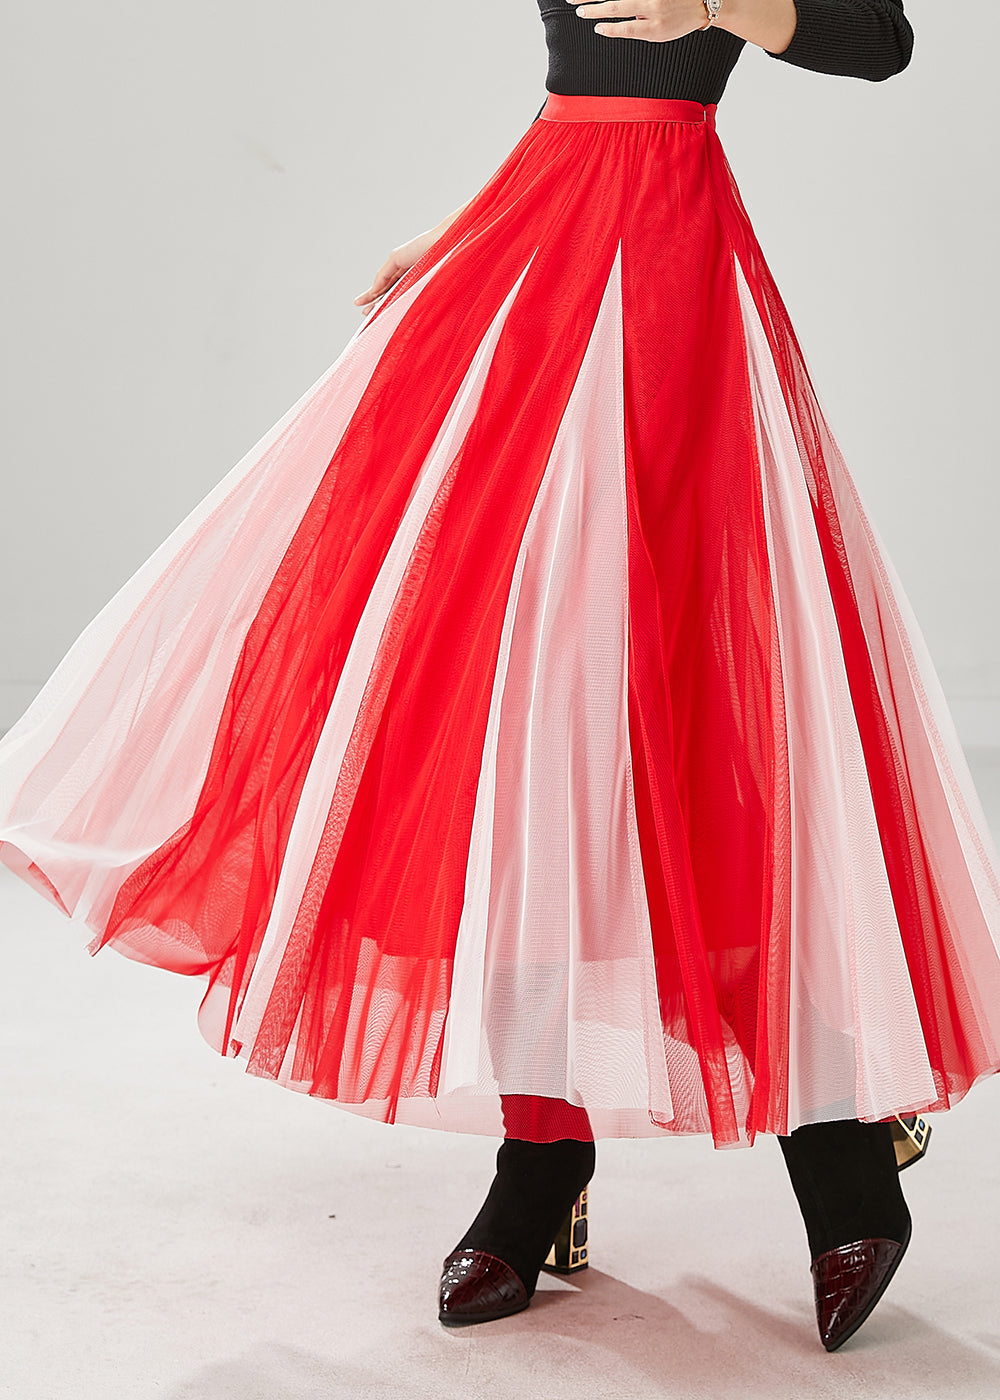 Elegant Red Wrinkled Patchwork Tulle Skirts Spring